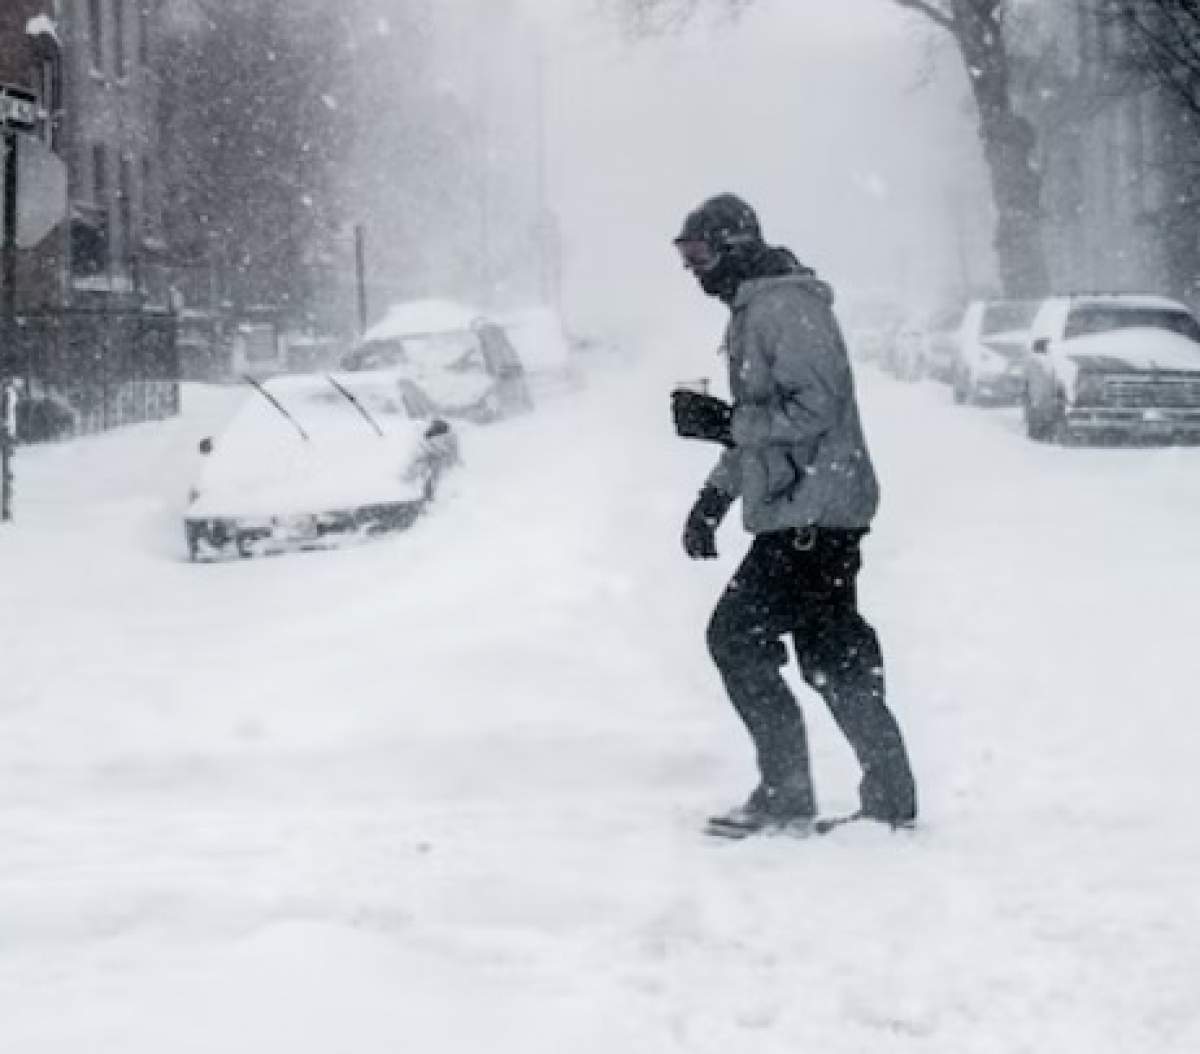 om în zăpezi pe stradă